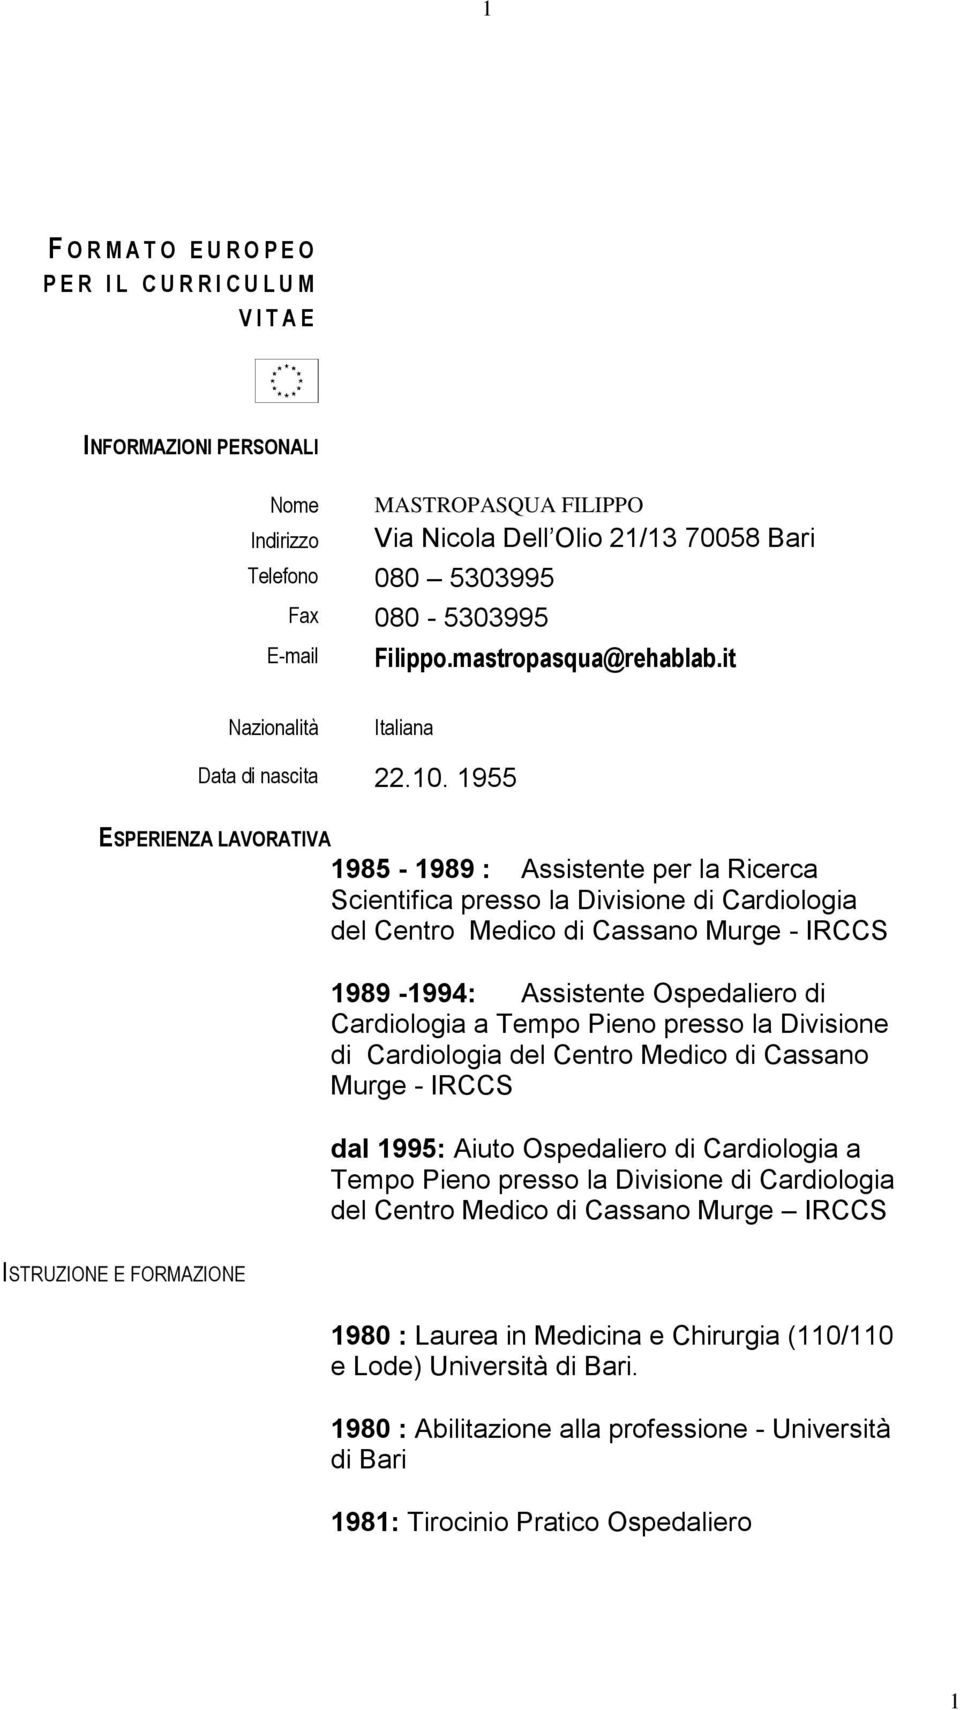 1955 ESPERIENZA LAVORATIVA 1985-1989 : Assistente per la Ricerca Scientifica presso la Divisione di Cardiologia del Centro Medico di Cassano Murge - IRCCS 1989-1994: Assistente Ospedaliero di